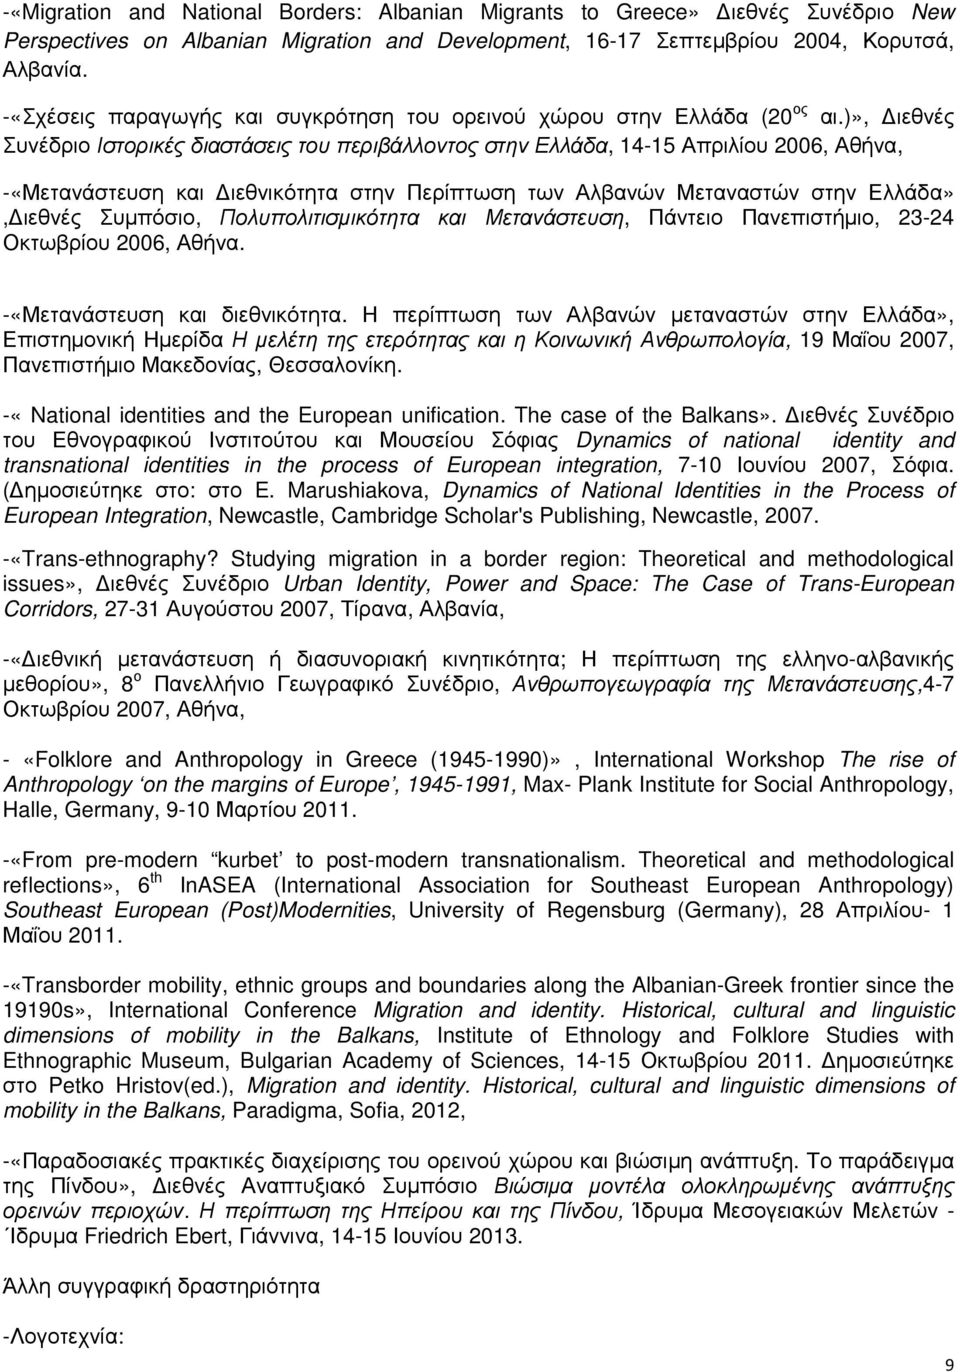 )», ιεθνές Συνέδριο Ιστορικές διαστάσεις του περιβάλλοντος στην Ελλάδα, 14-15 Απριλίου 2006, Αθήνα, -«Μετανάστευση και ιεθνικότητα στην Περίπτωση των Αλβανών Μεταναστών στην Ελλάδα», ιεθνές Συµπόσιο,